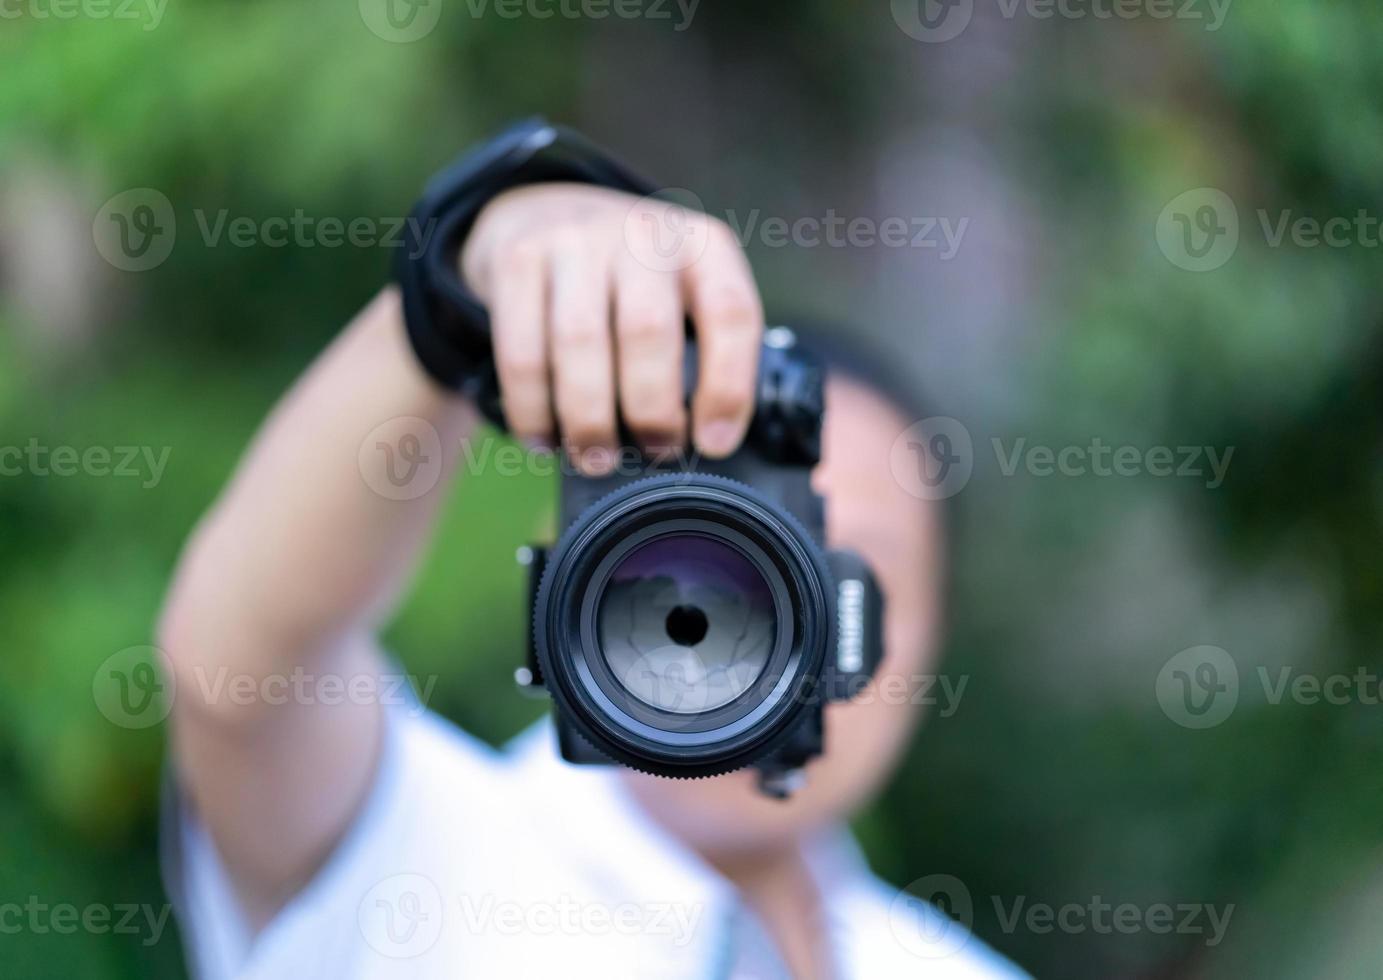 el hombre asiático sostiene la cámara de formato medio en la mano y se enfoca para disparar frente a él. foto